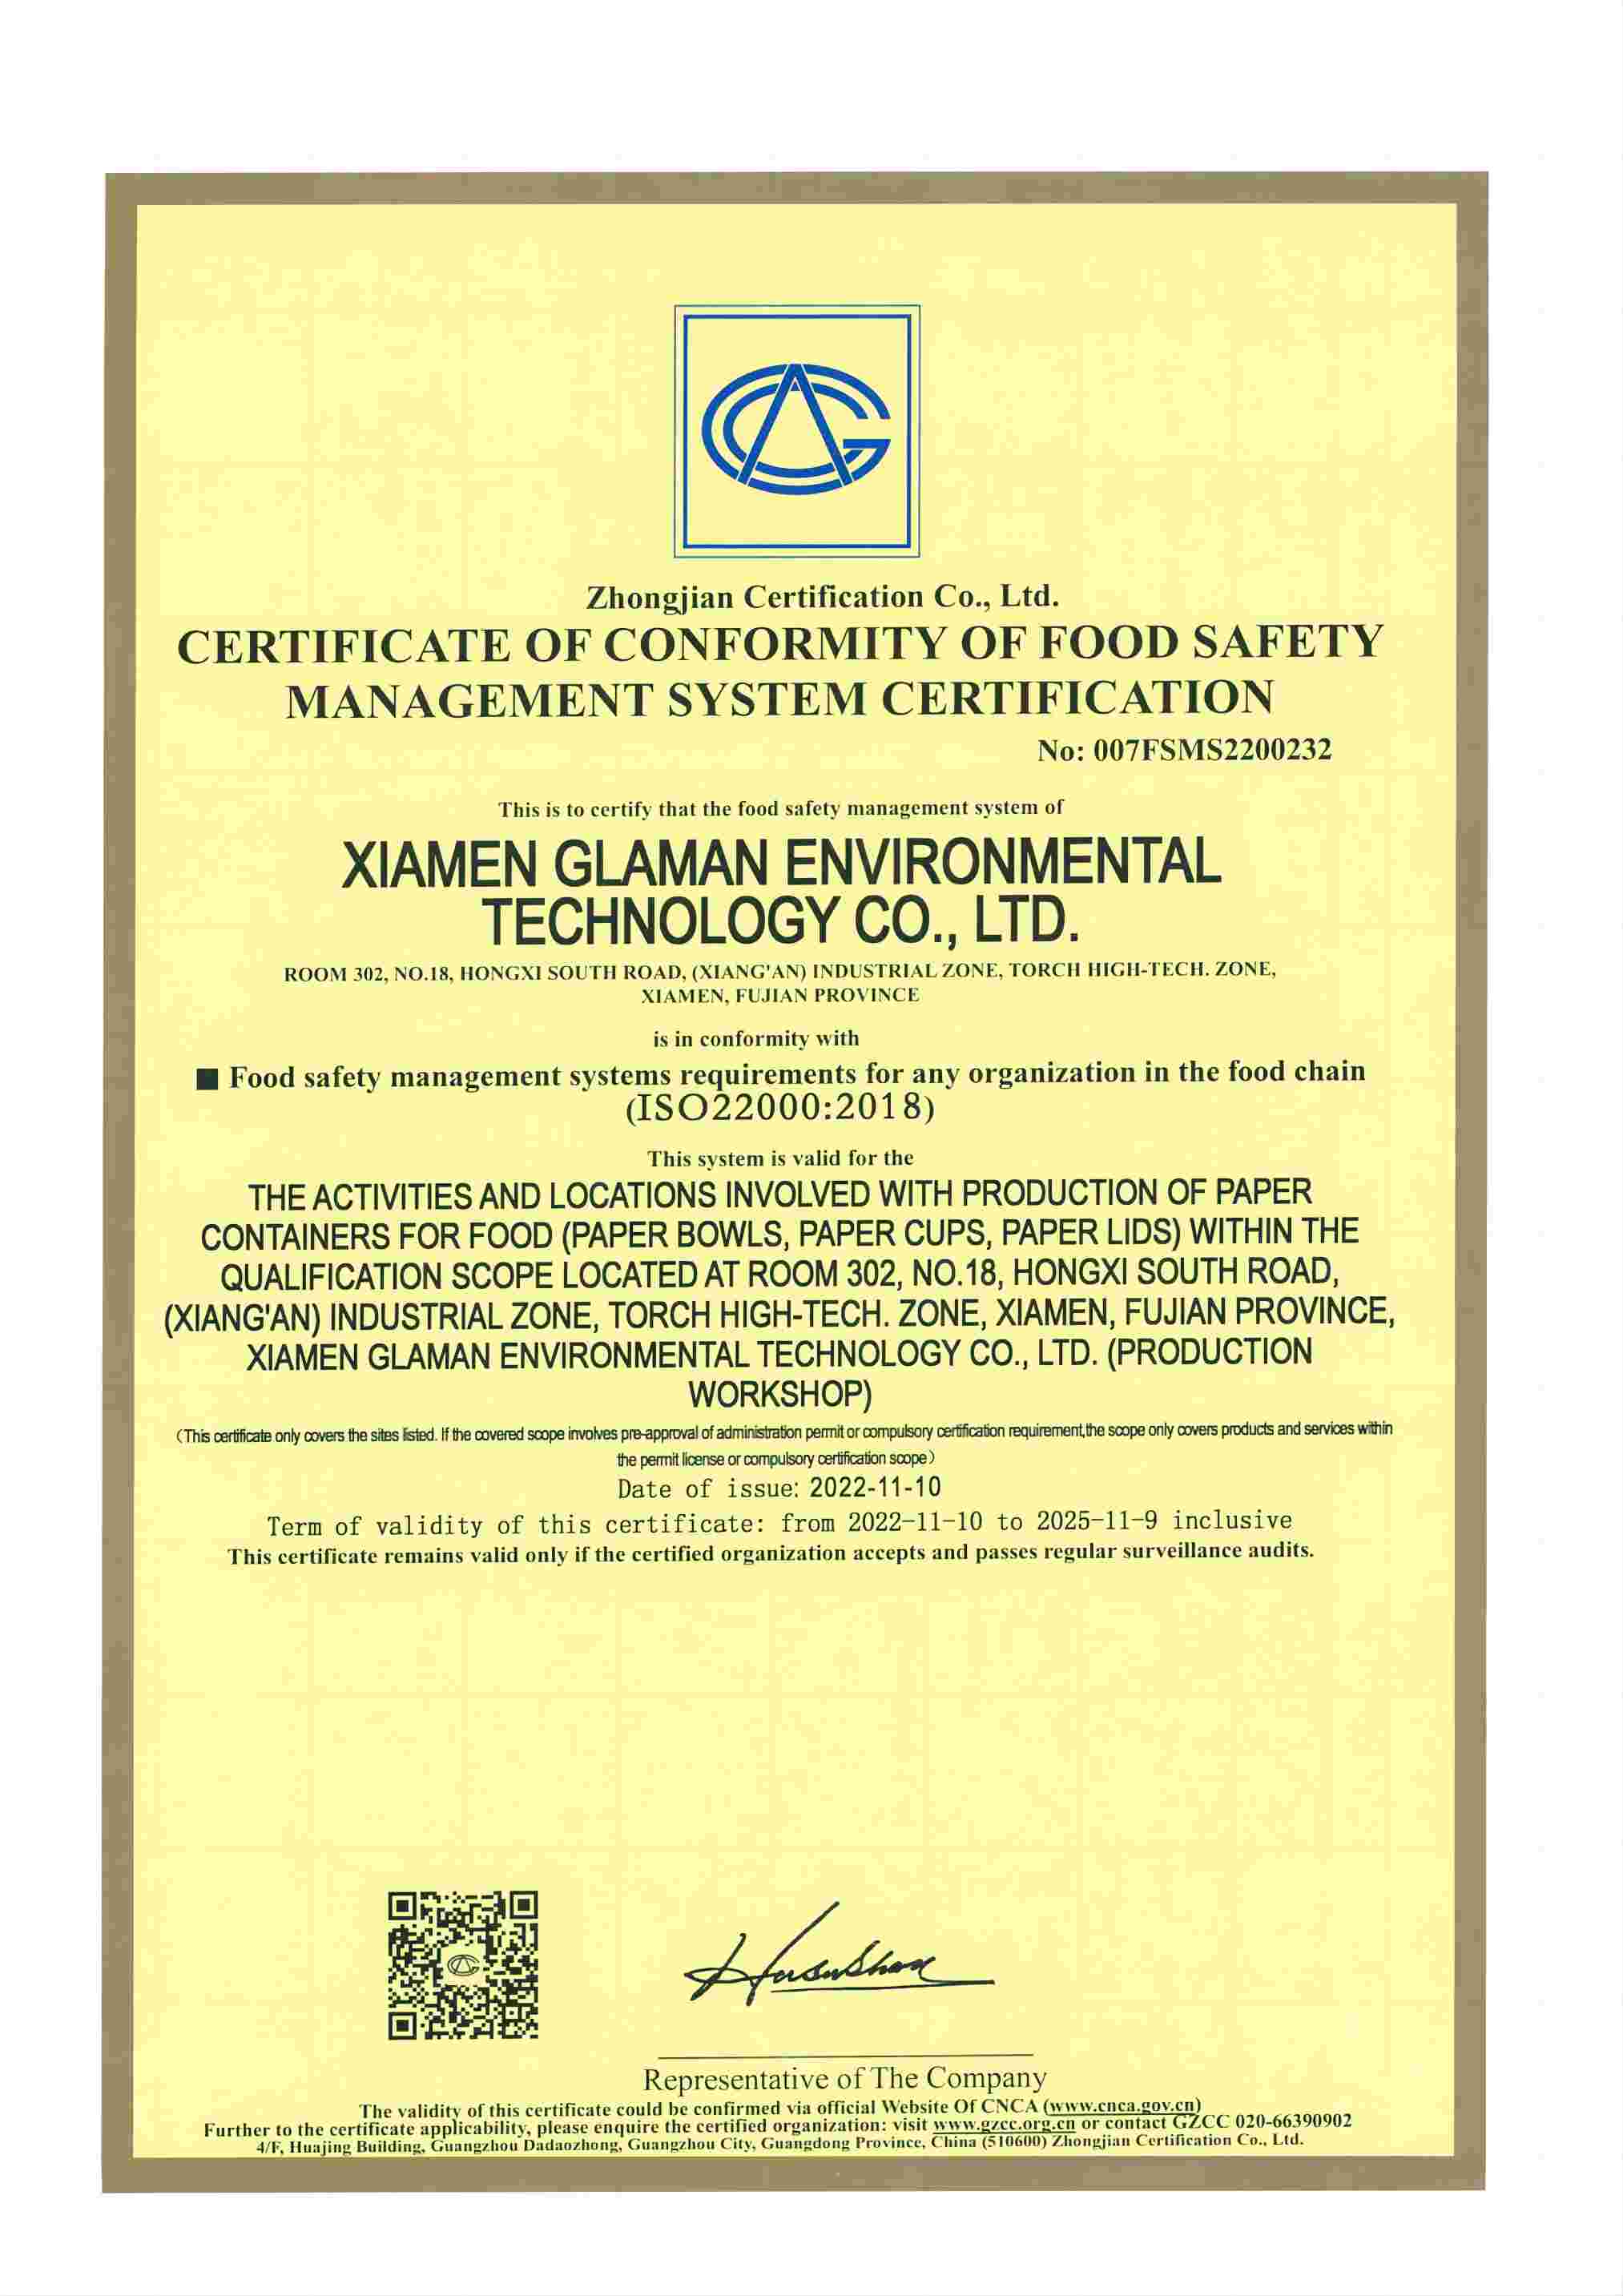 Die Zertifizierung nach ISO22000
        